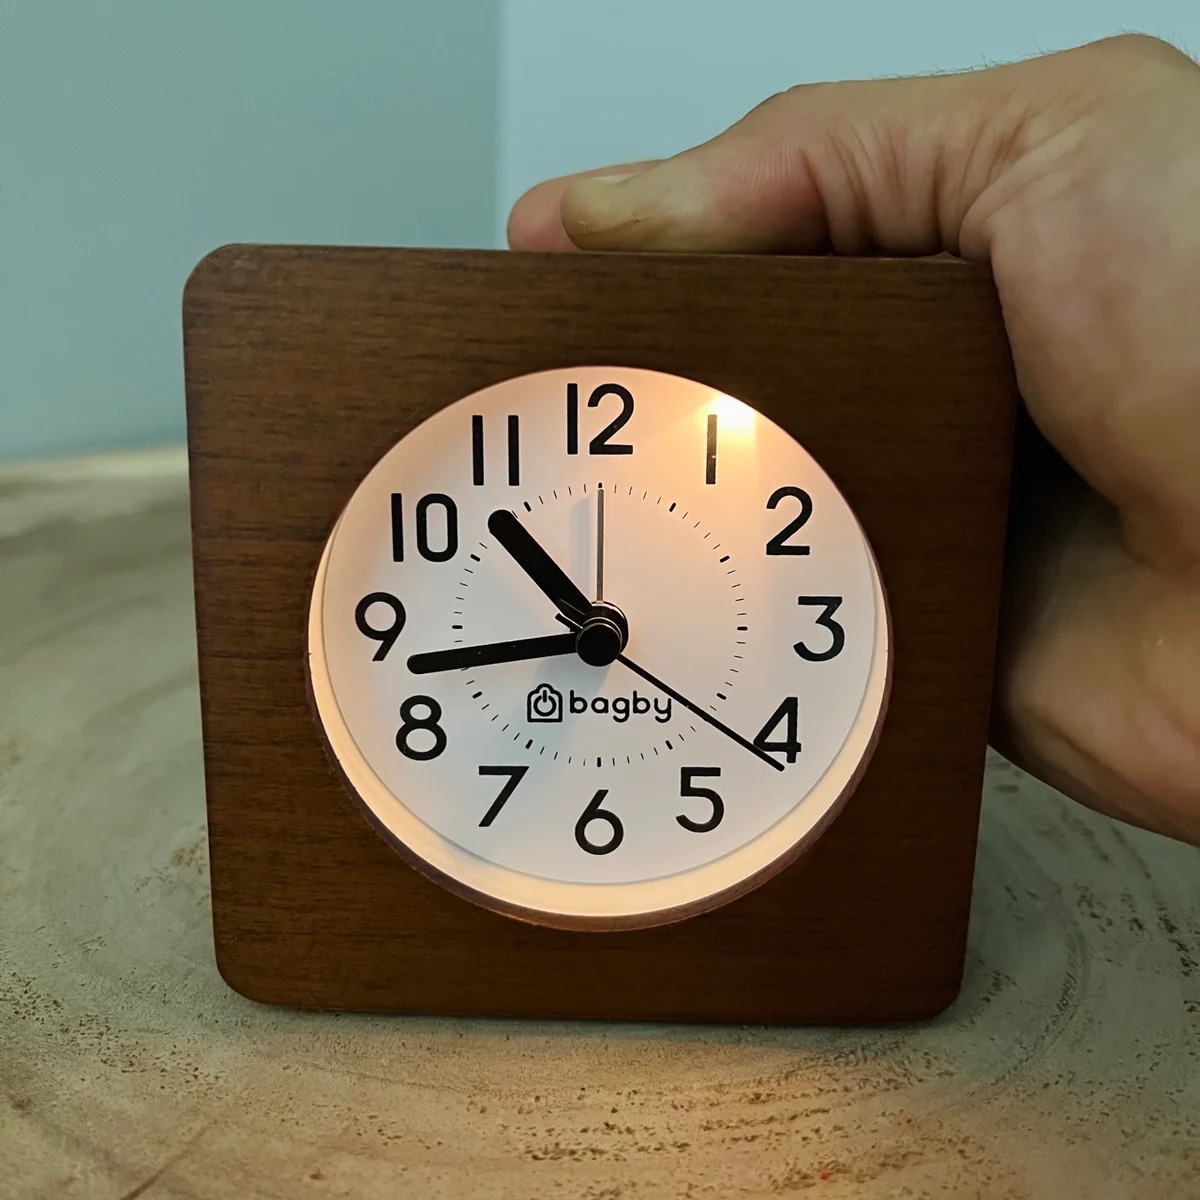 How To Set An Analog Alarm Clock